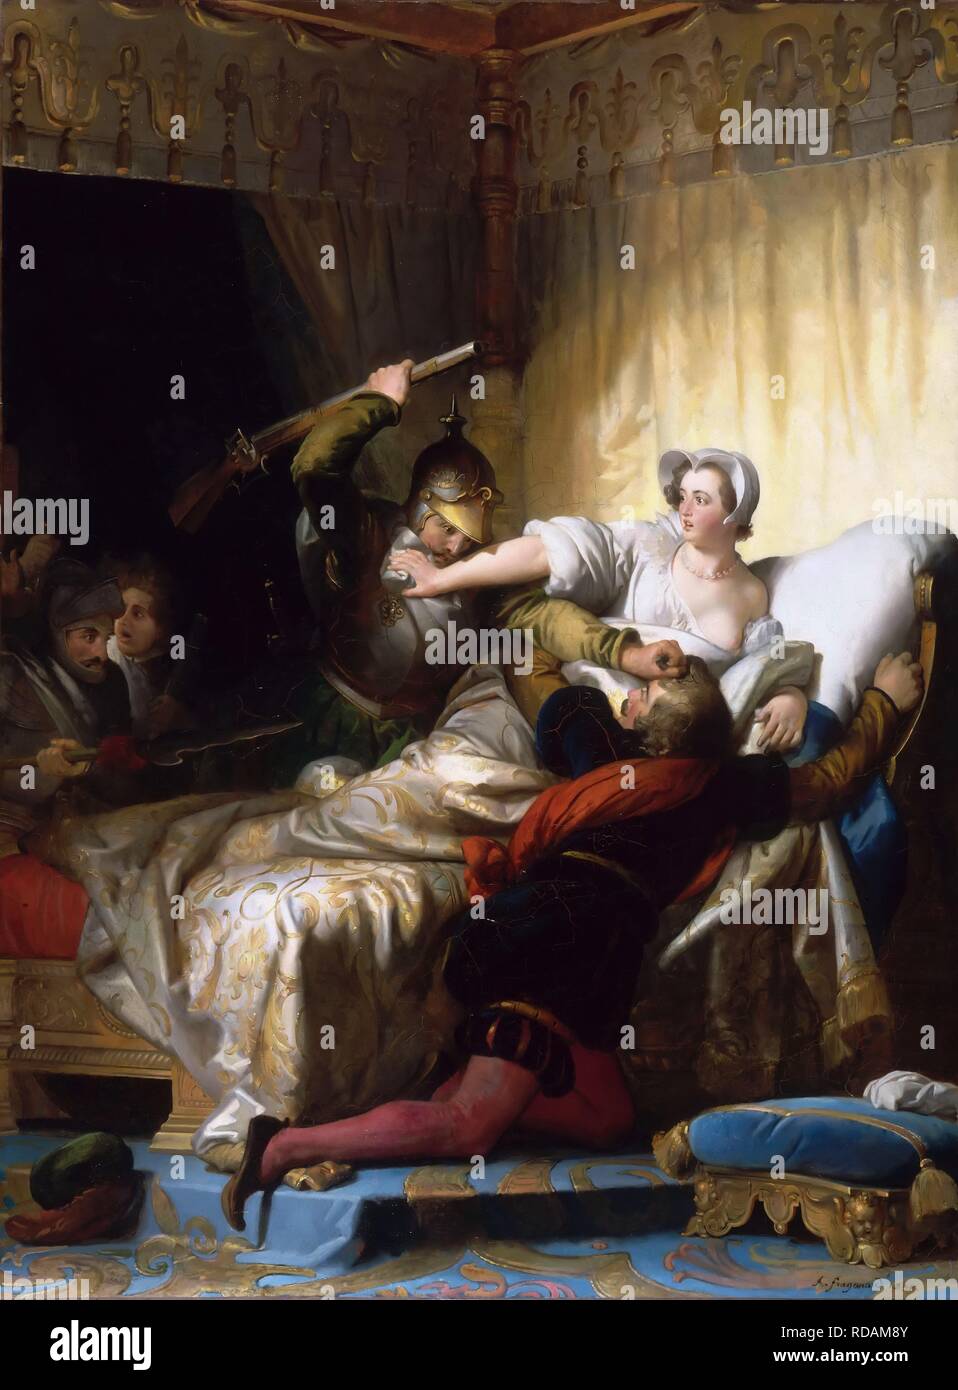 Scène dans la chambre à coucher de Marguerite de Valois pendant la journée de la Saint-Barthélemy massacre. Musée : Musée du Louvre, Paris. Auteur : FRAGONARD, ALEXANDRE-EVARISTE. Banque D'Images